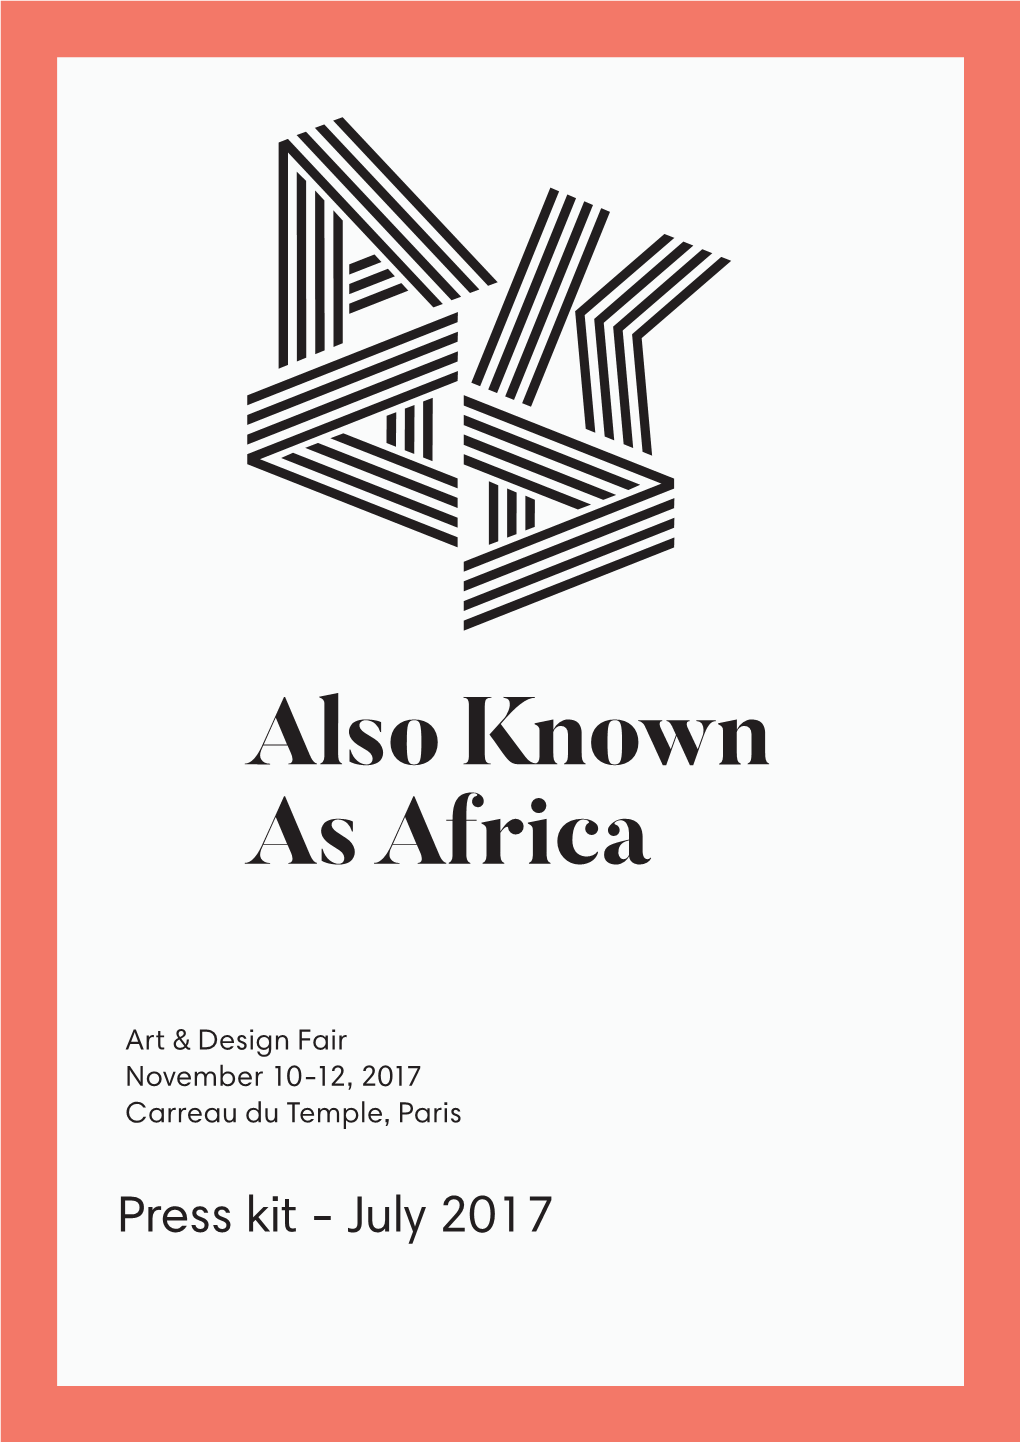 Press Kit - July 2017